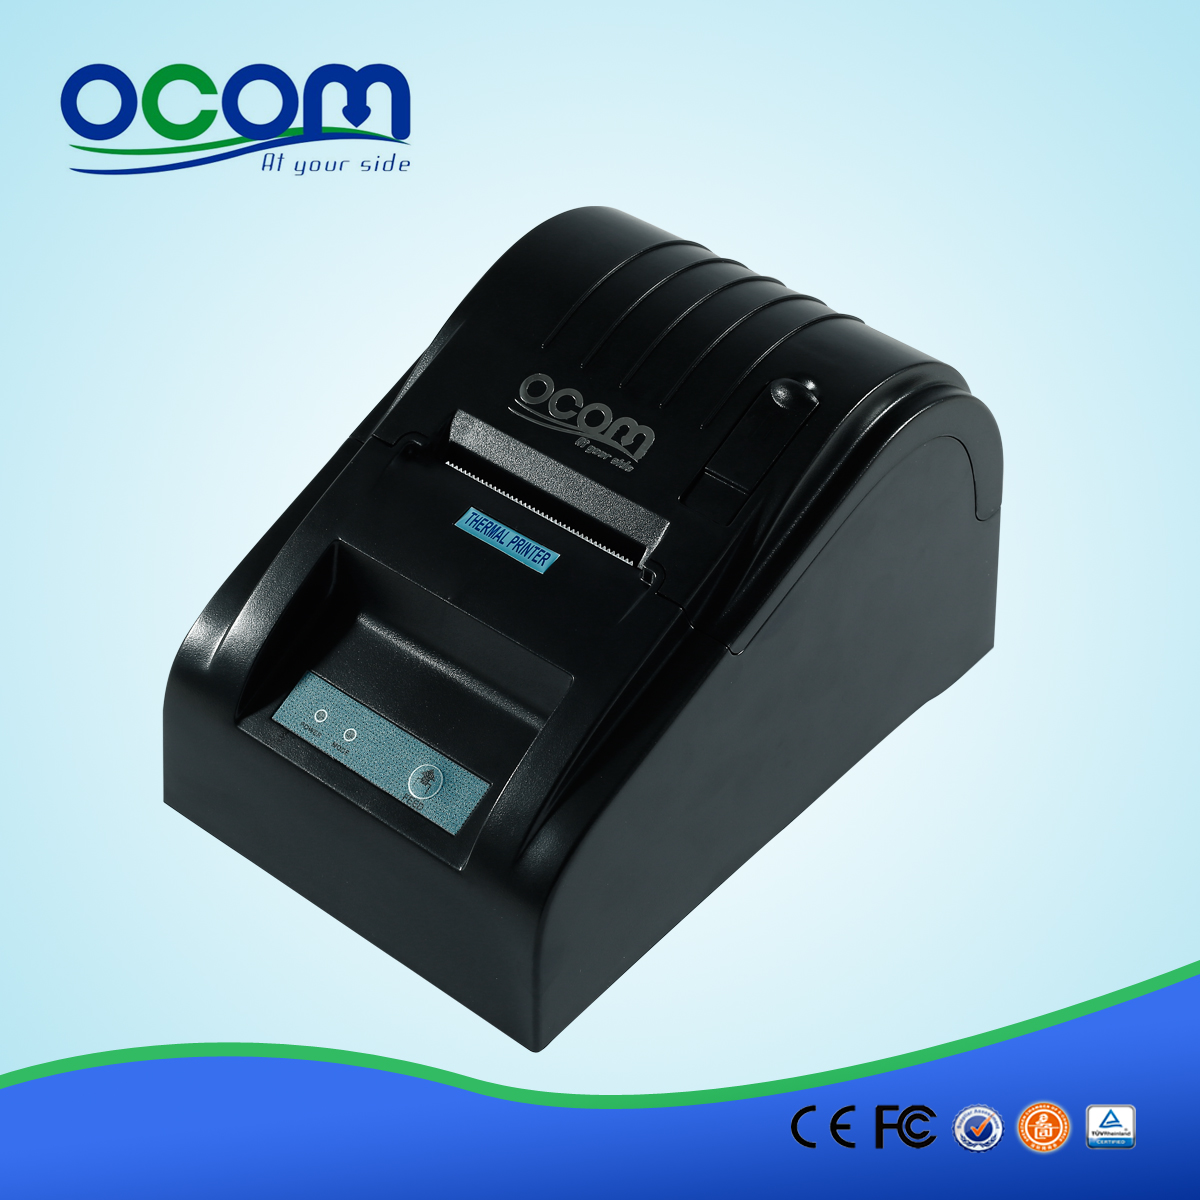 工厂POS系统蓝牙热敏打印机OCPP-585